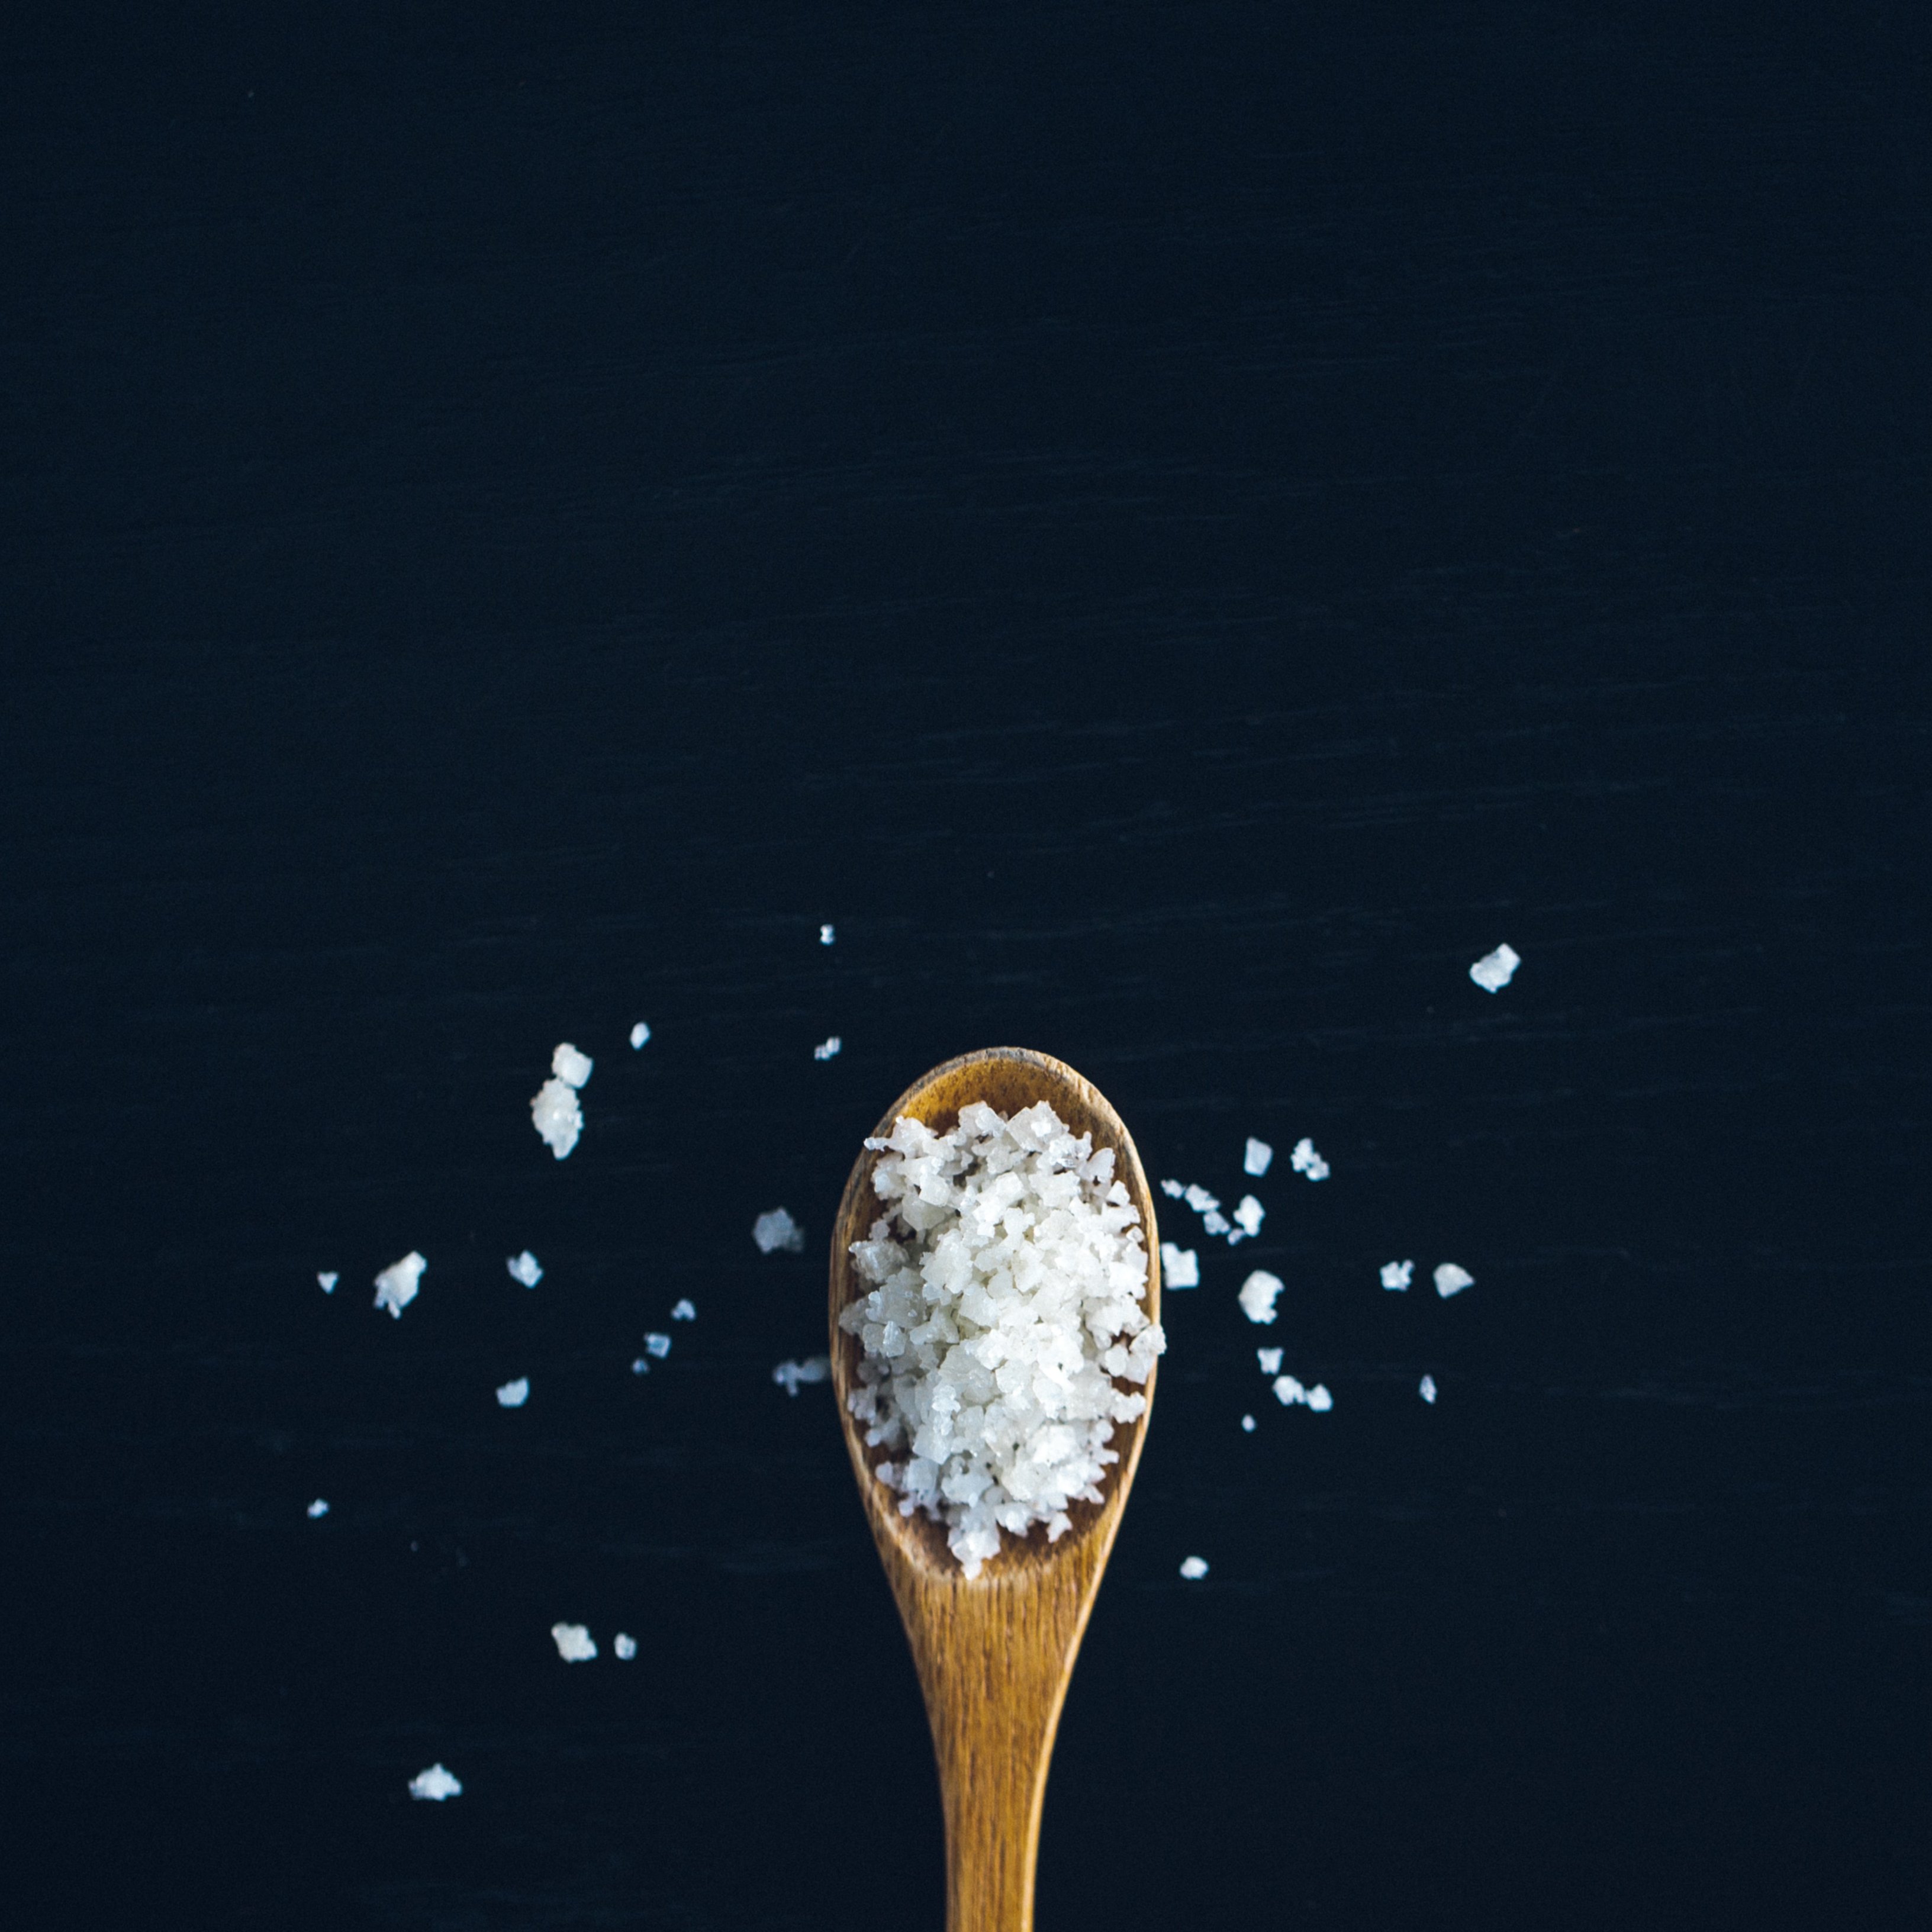 Coneixes les conseqüències per a la salut de menjar amb massa sal?